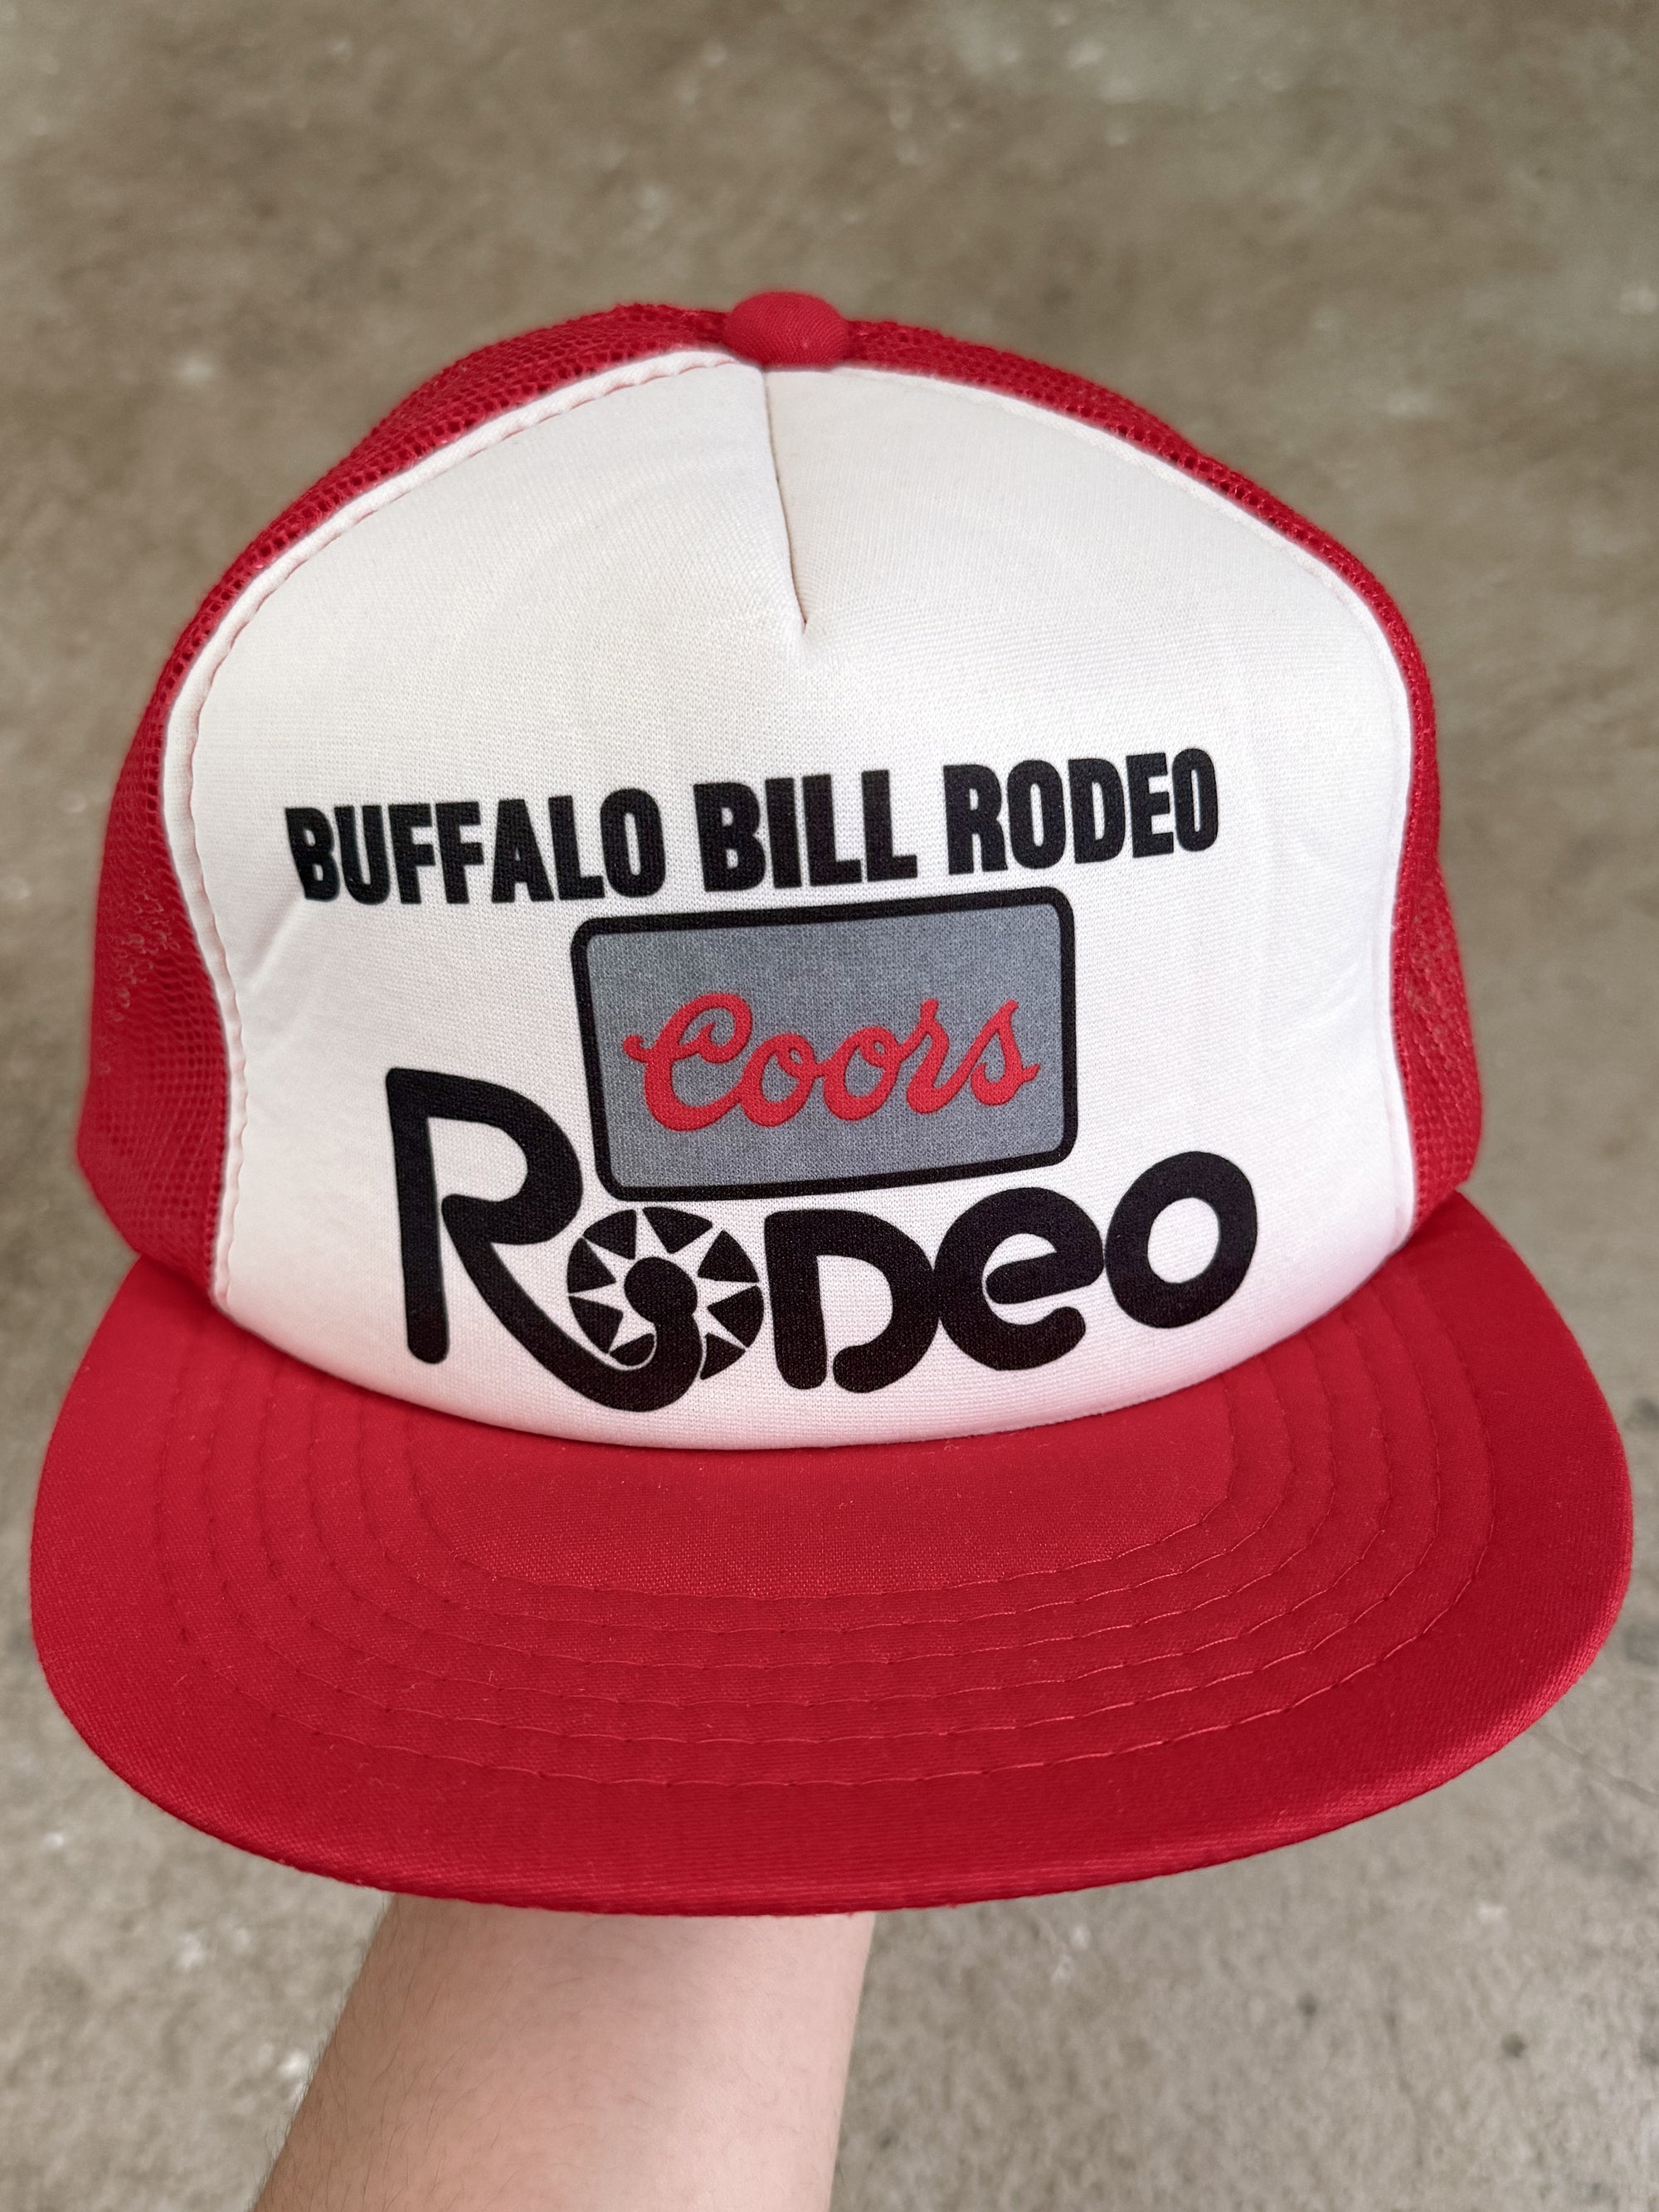 1980s "Buffalo Bill Rodeo" Trucker Hat